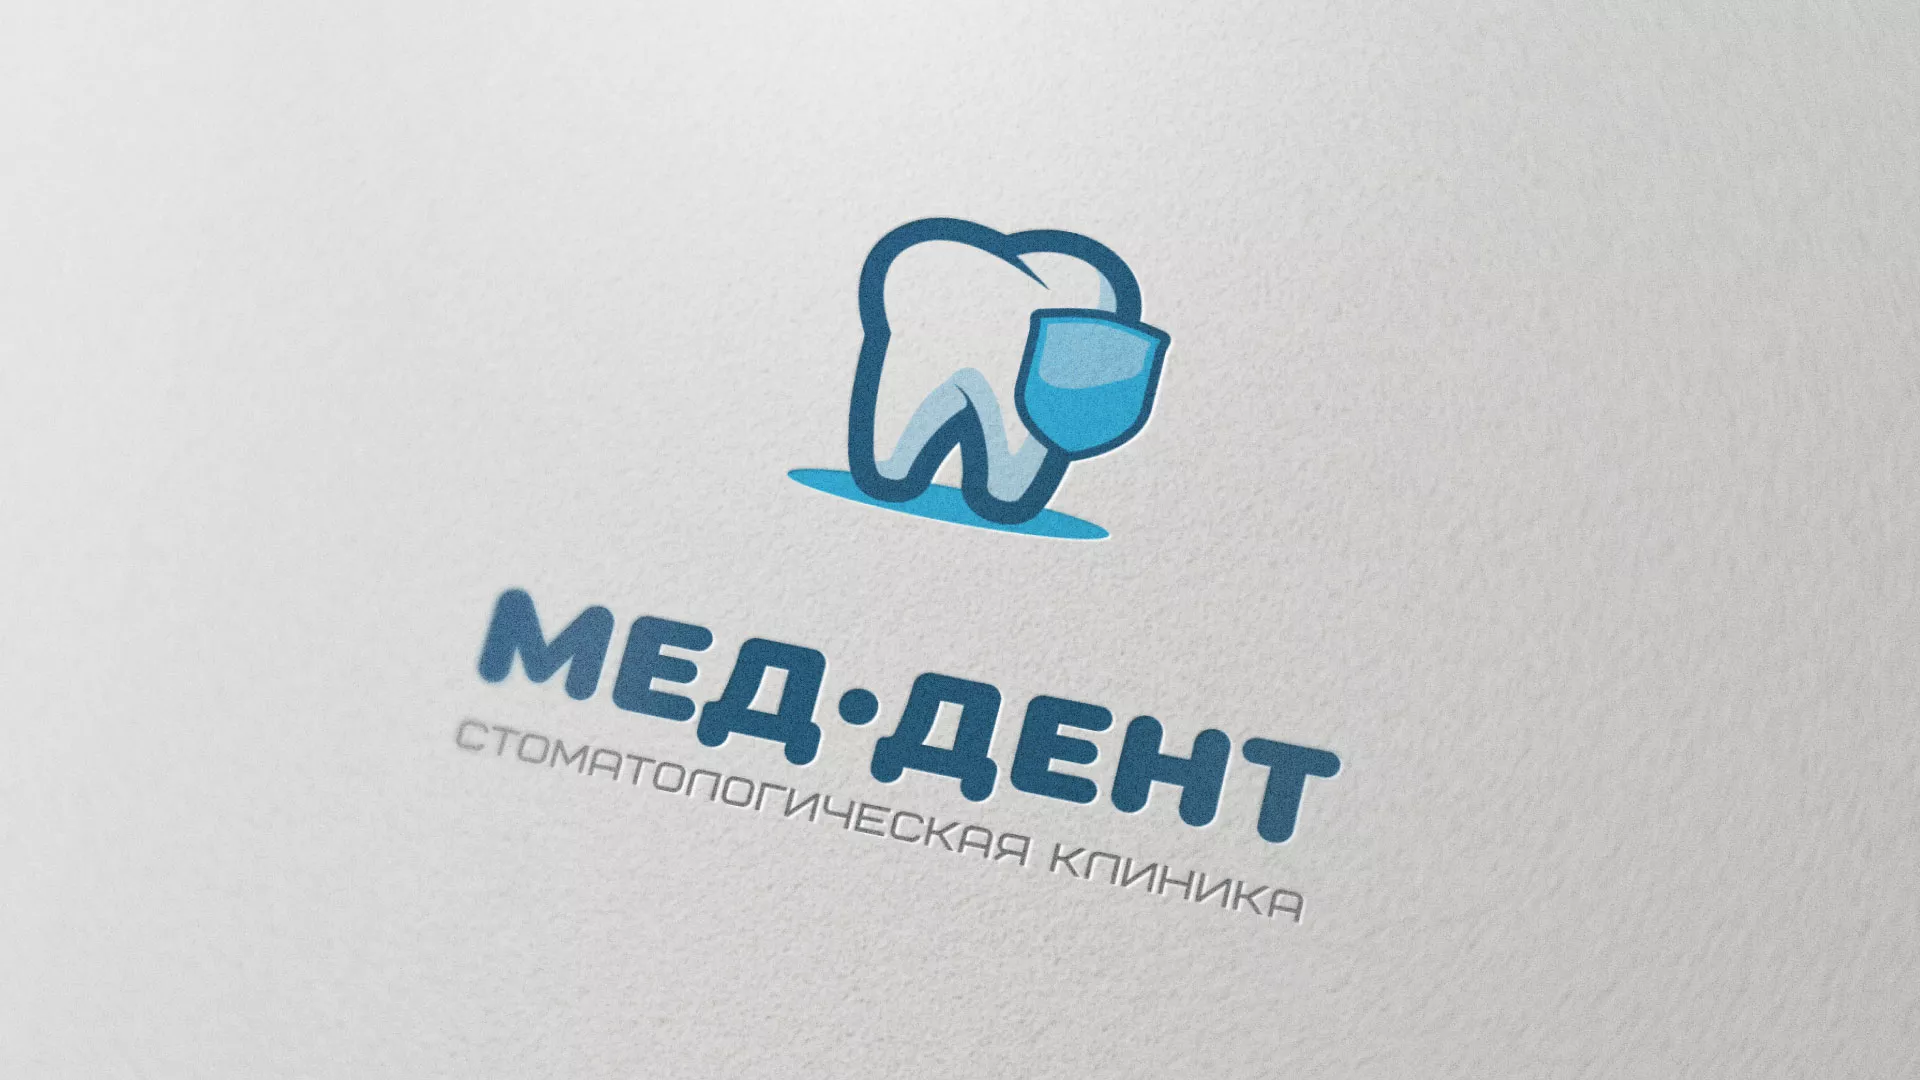 Разработка логотипа стоматологической клиники «МЕД-ДЕНТ» в Каменске-Уральском